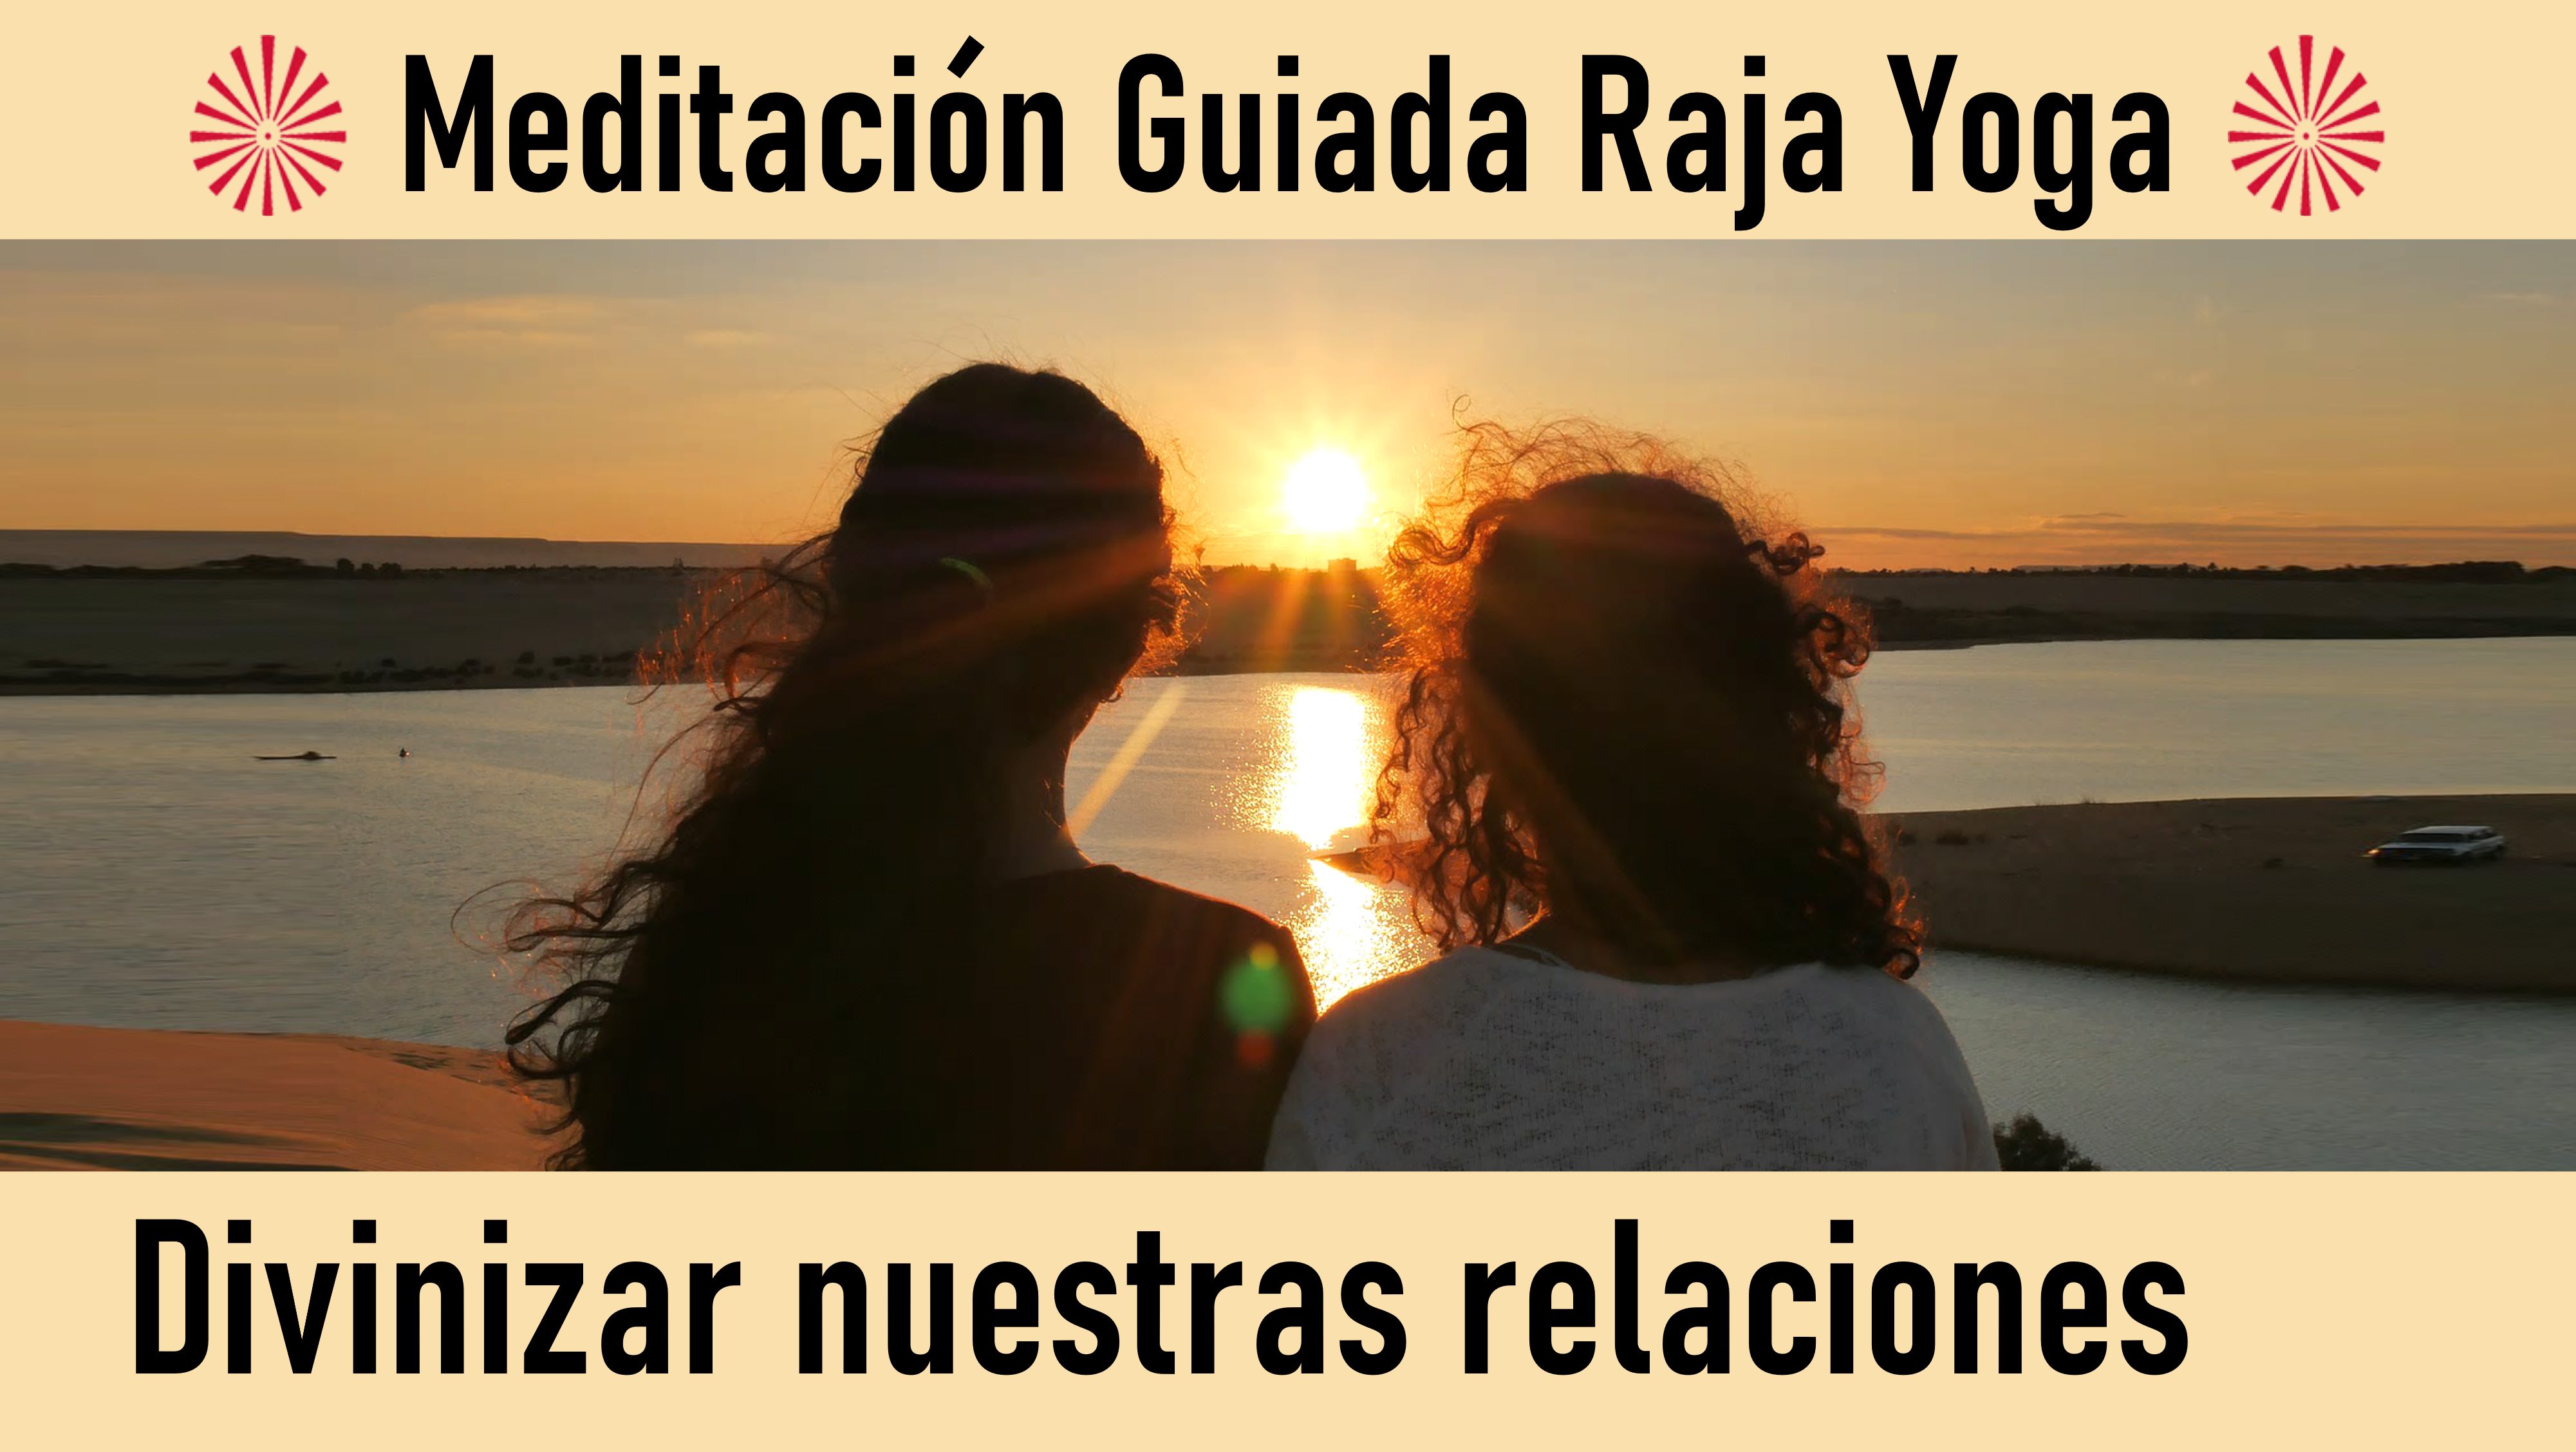 Meditación Raja Yoga: Divinizar nuestras relaciones (17 Julio 2020) On-line desde Barcelona